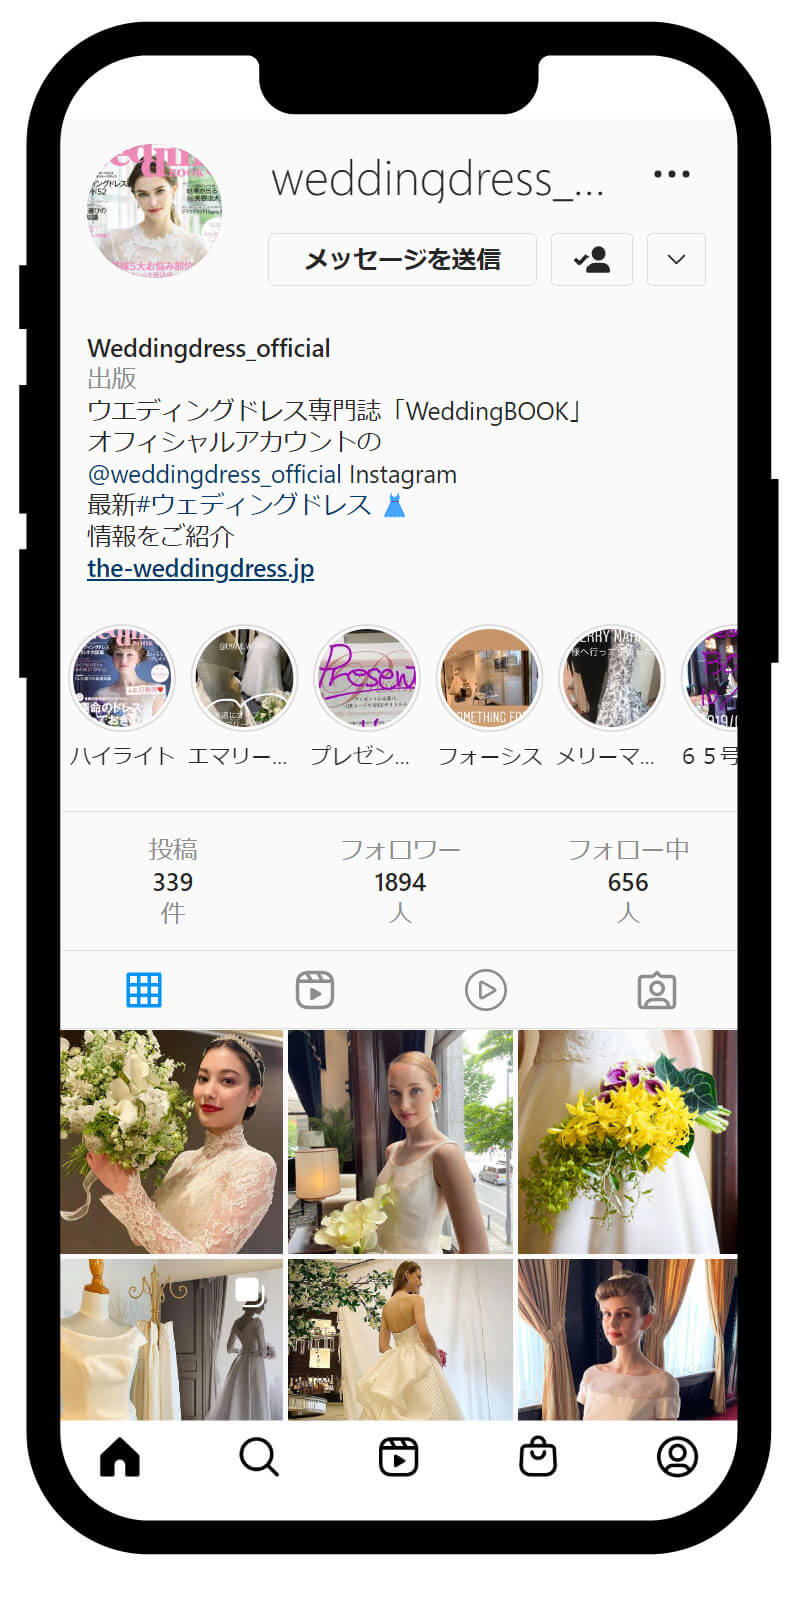 雑誌「Wedding BOOK」「WeddingDress.jp」のオフィシャルインスタグラム